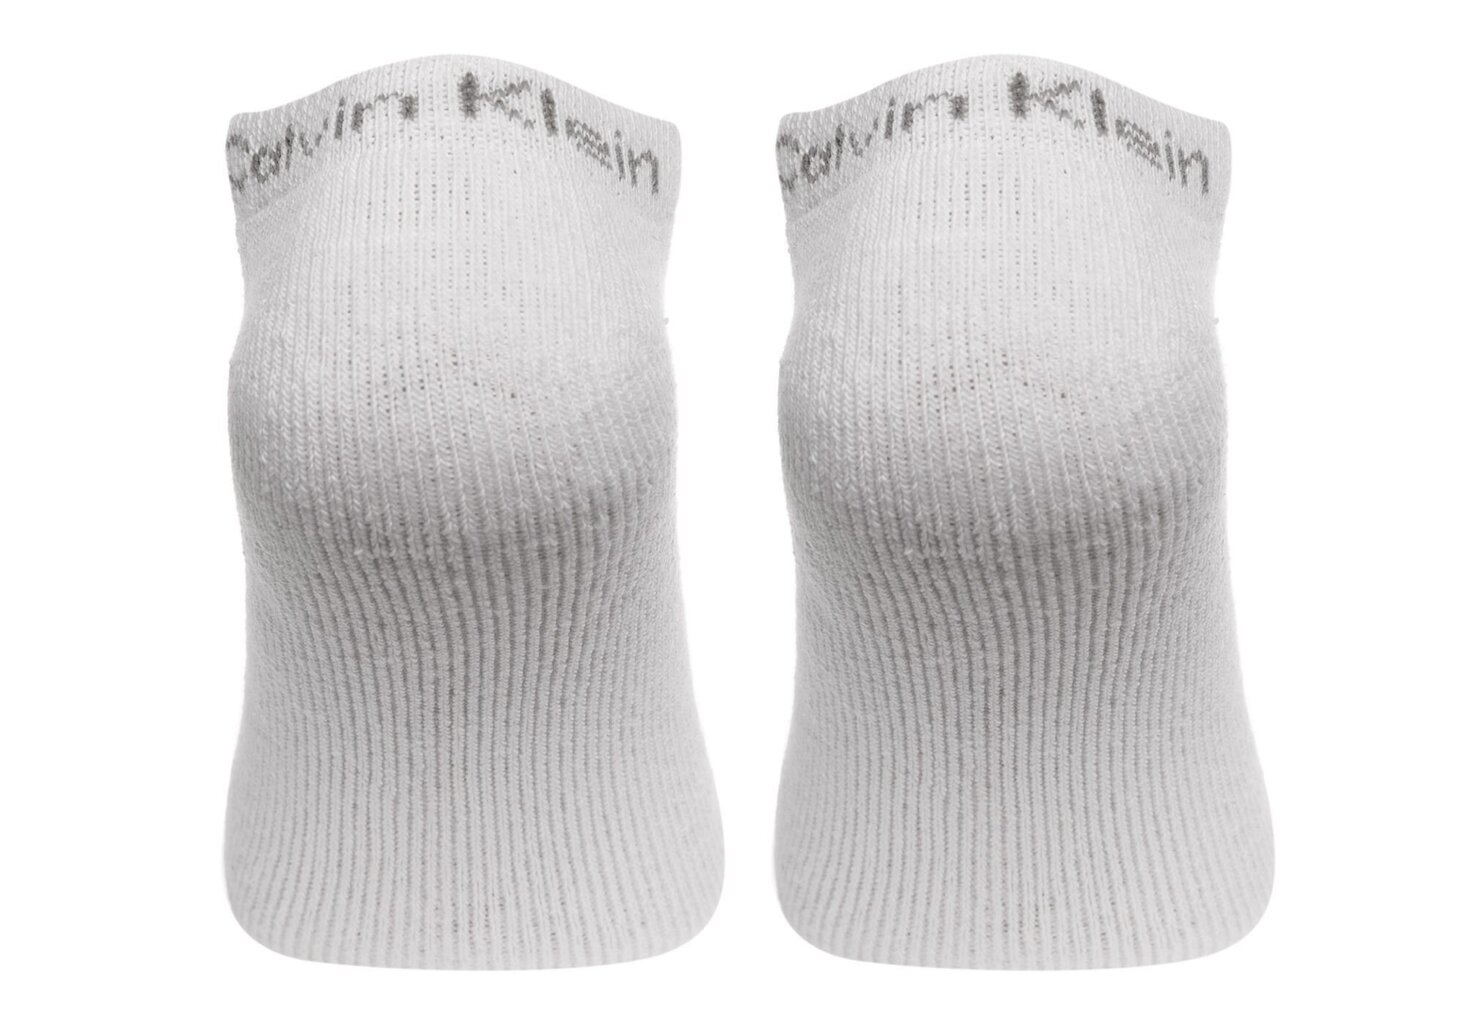 Vyriškos kojinės CALVIN KLEIN, 6 poros, baltos/pilkos/juodos spalvos 701218720 003 39825 kaina ir informacija | Vyriškos kojinės | pigu.lt